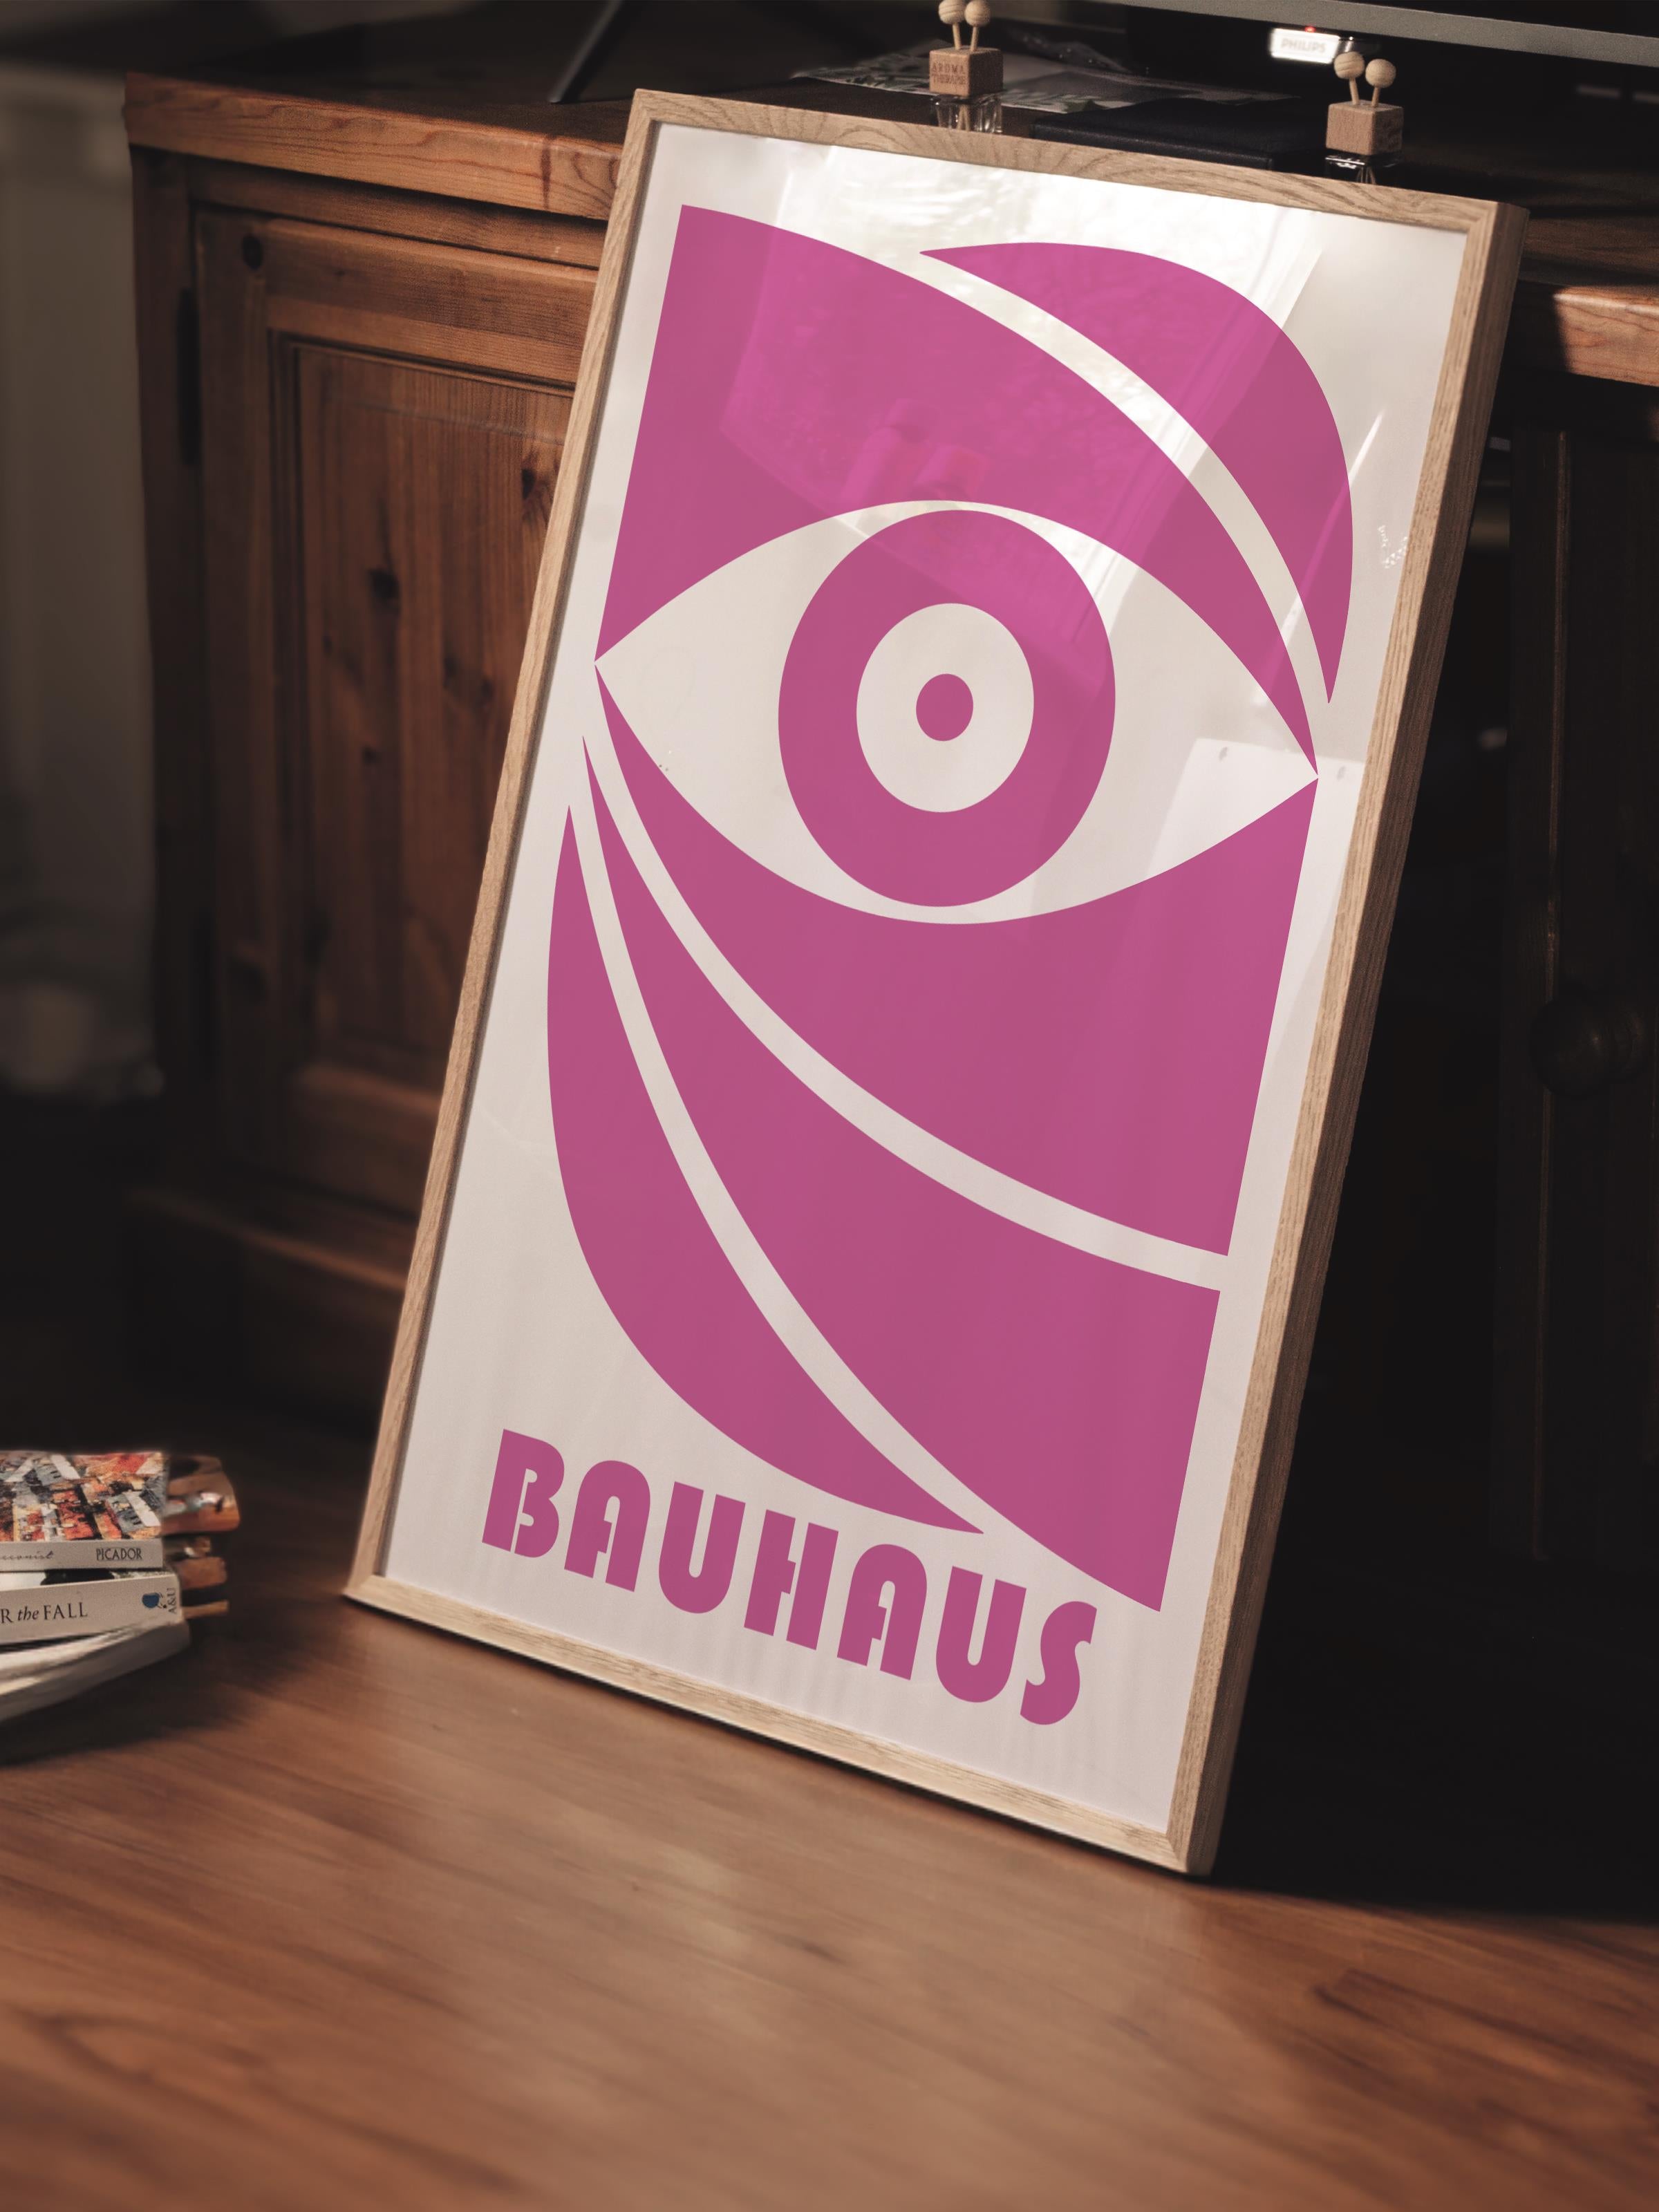 Çerçevesiz Poster, Bauhaus Serisi, Pembe Duvar Posteri, Duvar Dekoru, HD Baskı, Kalın Arşivsel Sanat Kağıdı